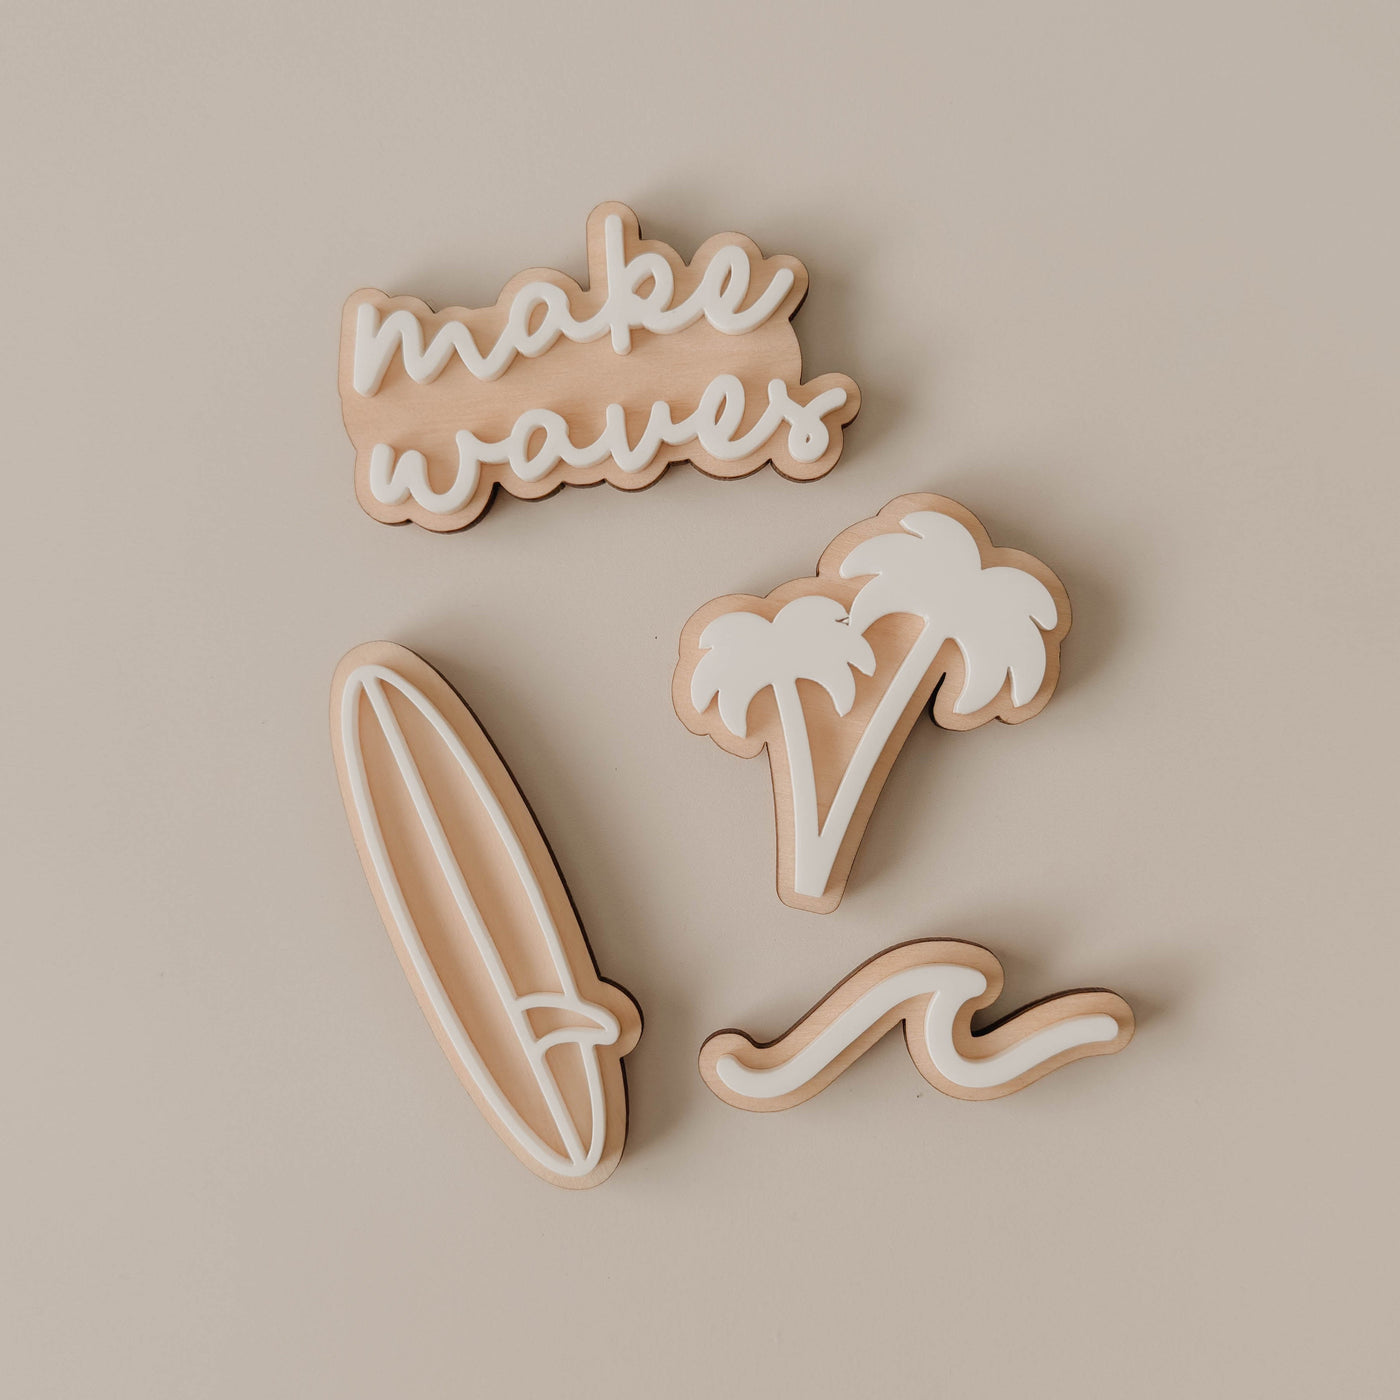 Locker Magnets | MAKE WAVES | Set of 4